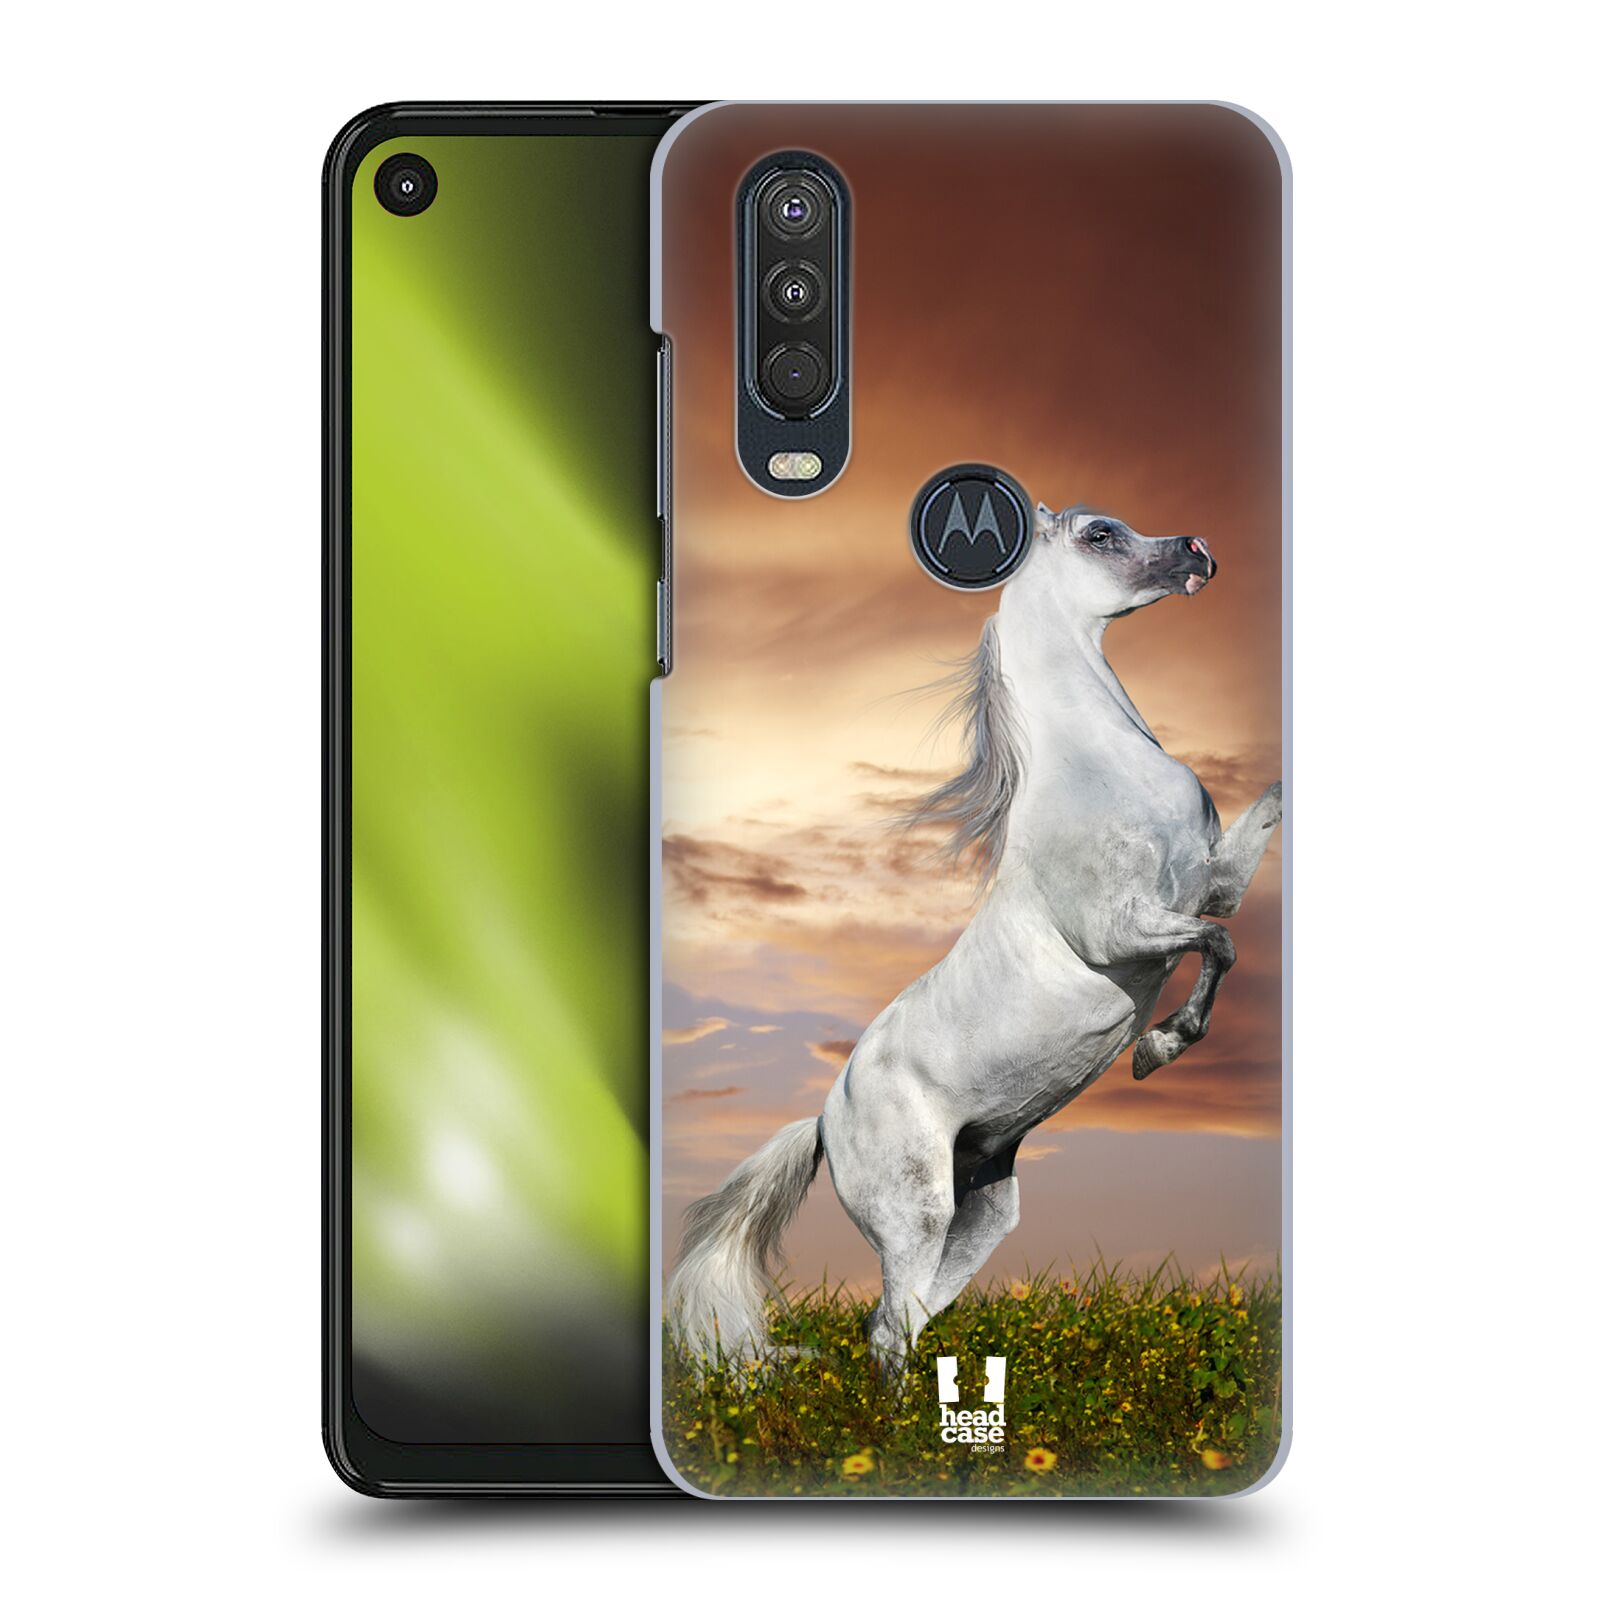 Zadní obal pro mobil Motorola One Action - HEAD CASE - Svět zvířat divoký kůň